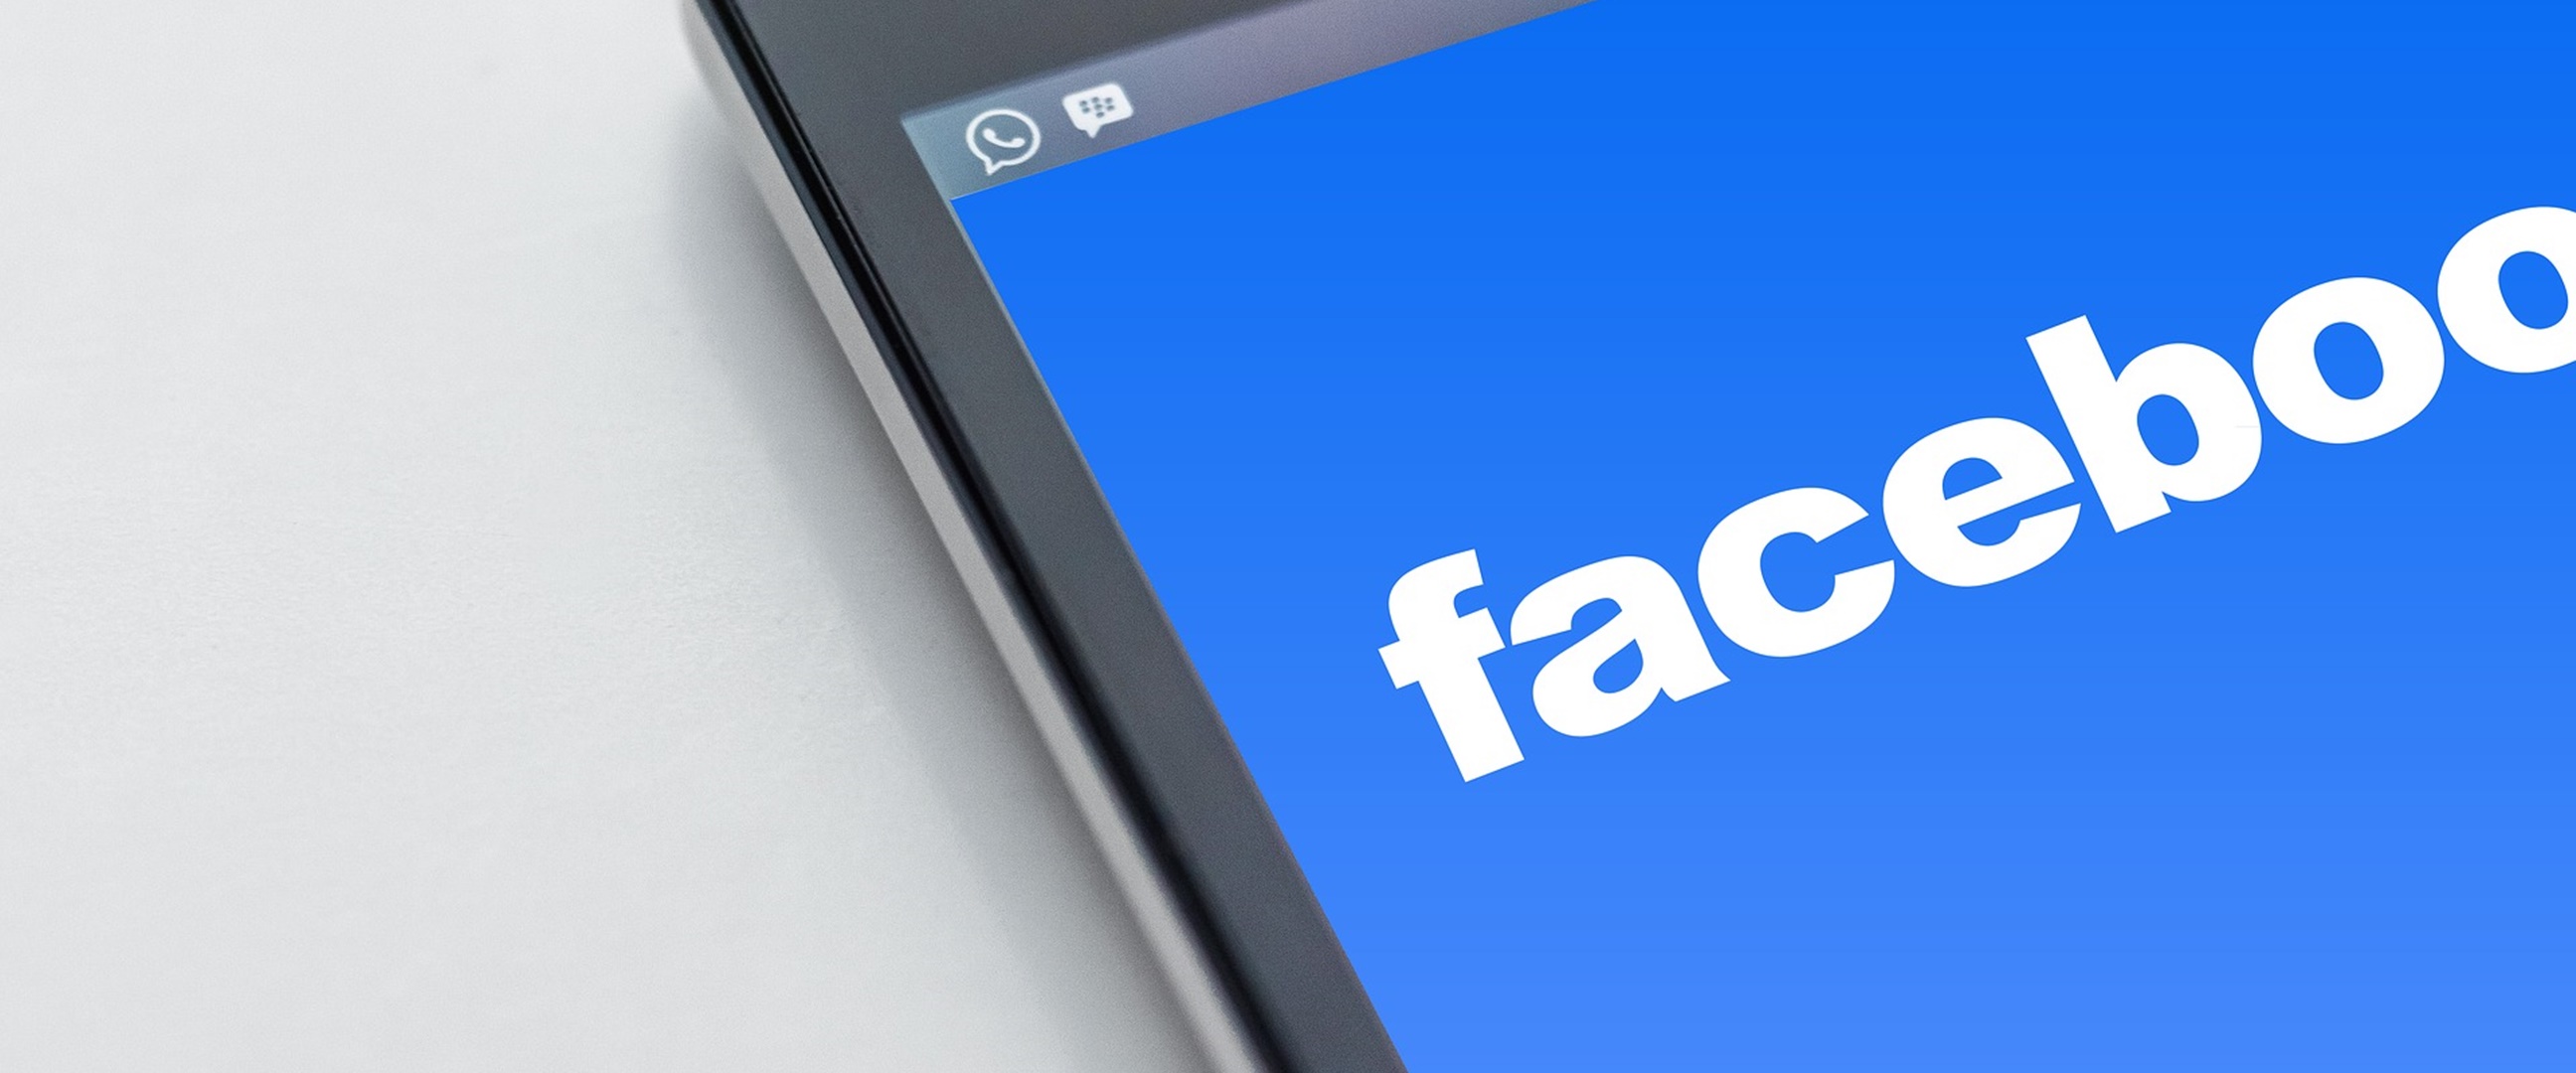 Facebook luncurkan aplikasi pesaing Zoom